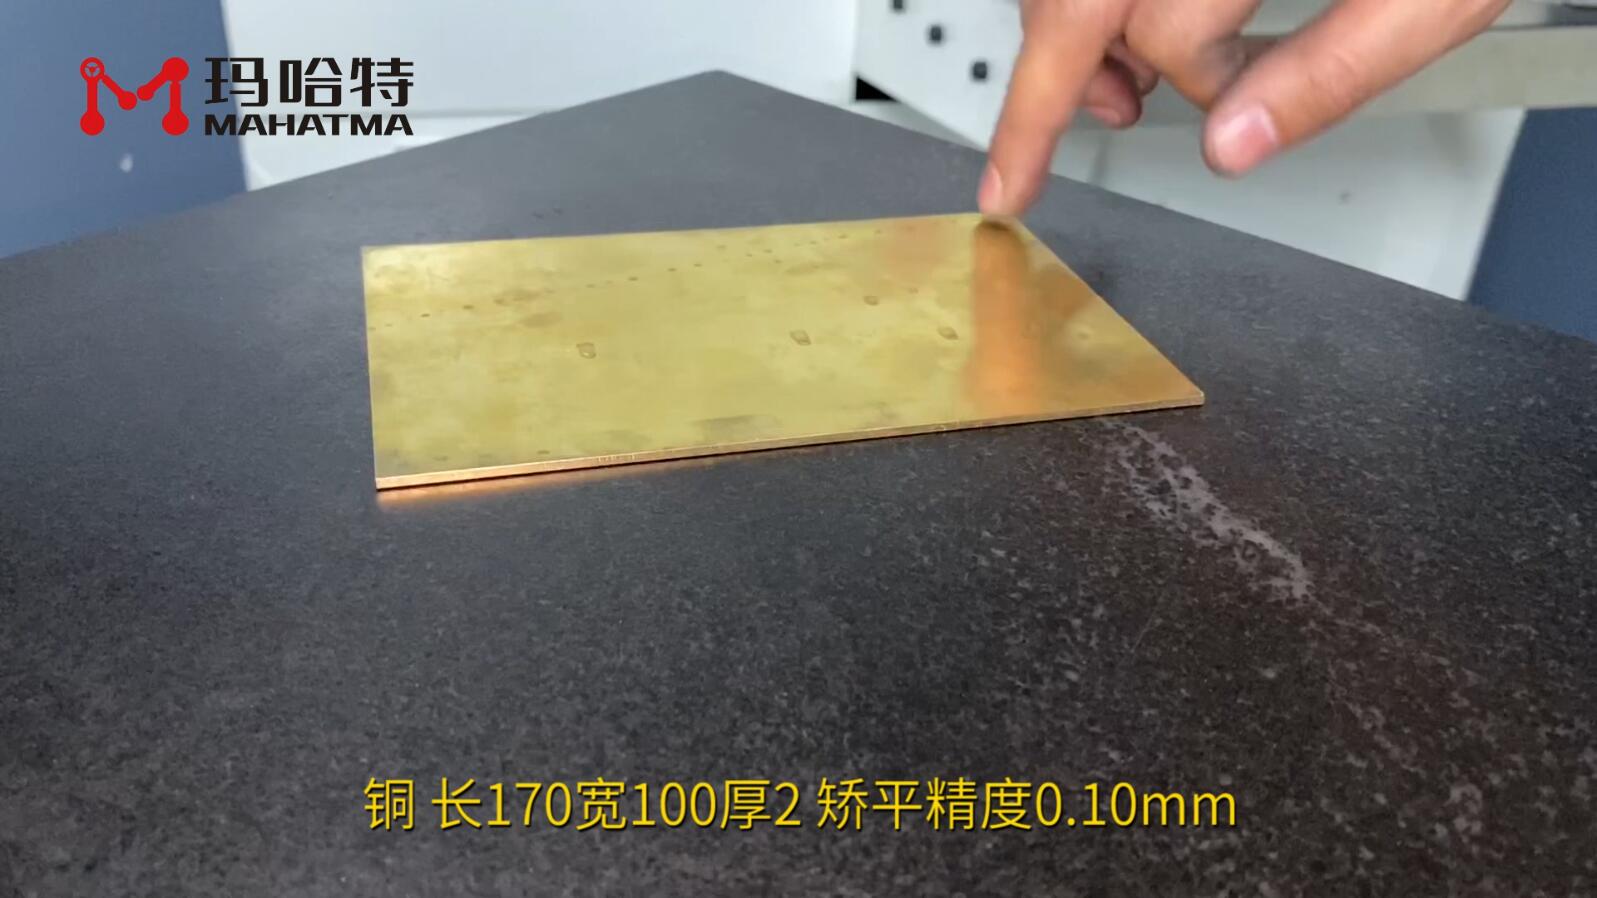 铜 MHT60-600 长方形 长170宽100厚2 矫平精度0.10mm